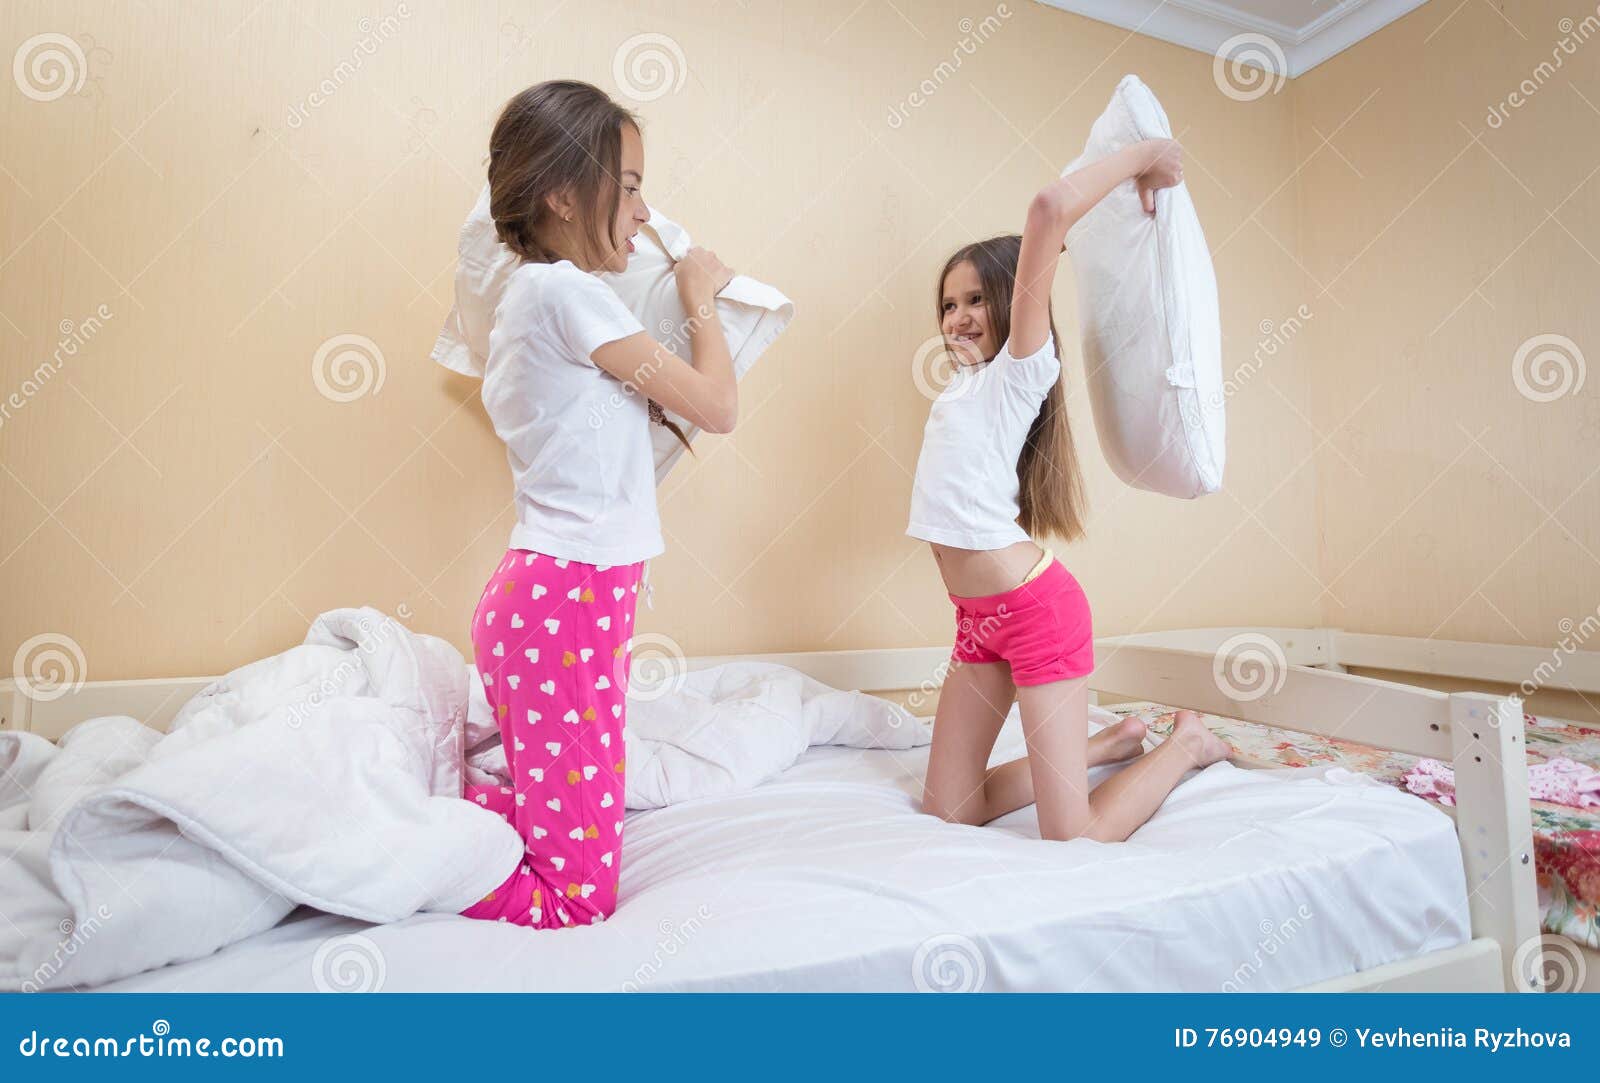 Сестра в трусиках в комнате. Сестры в пижамах кровать. Пижама для подростка девочки. Сестра в пижаме. Кровать для девочки 12 лет.